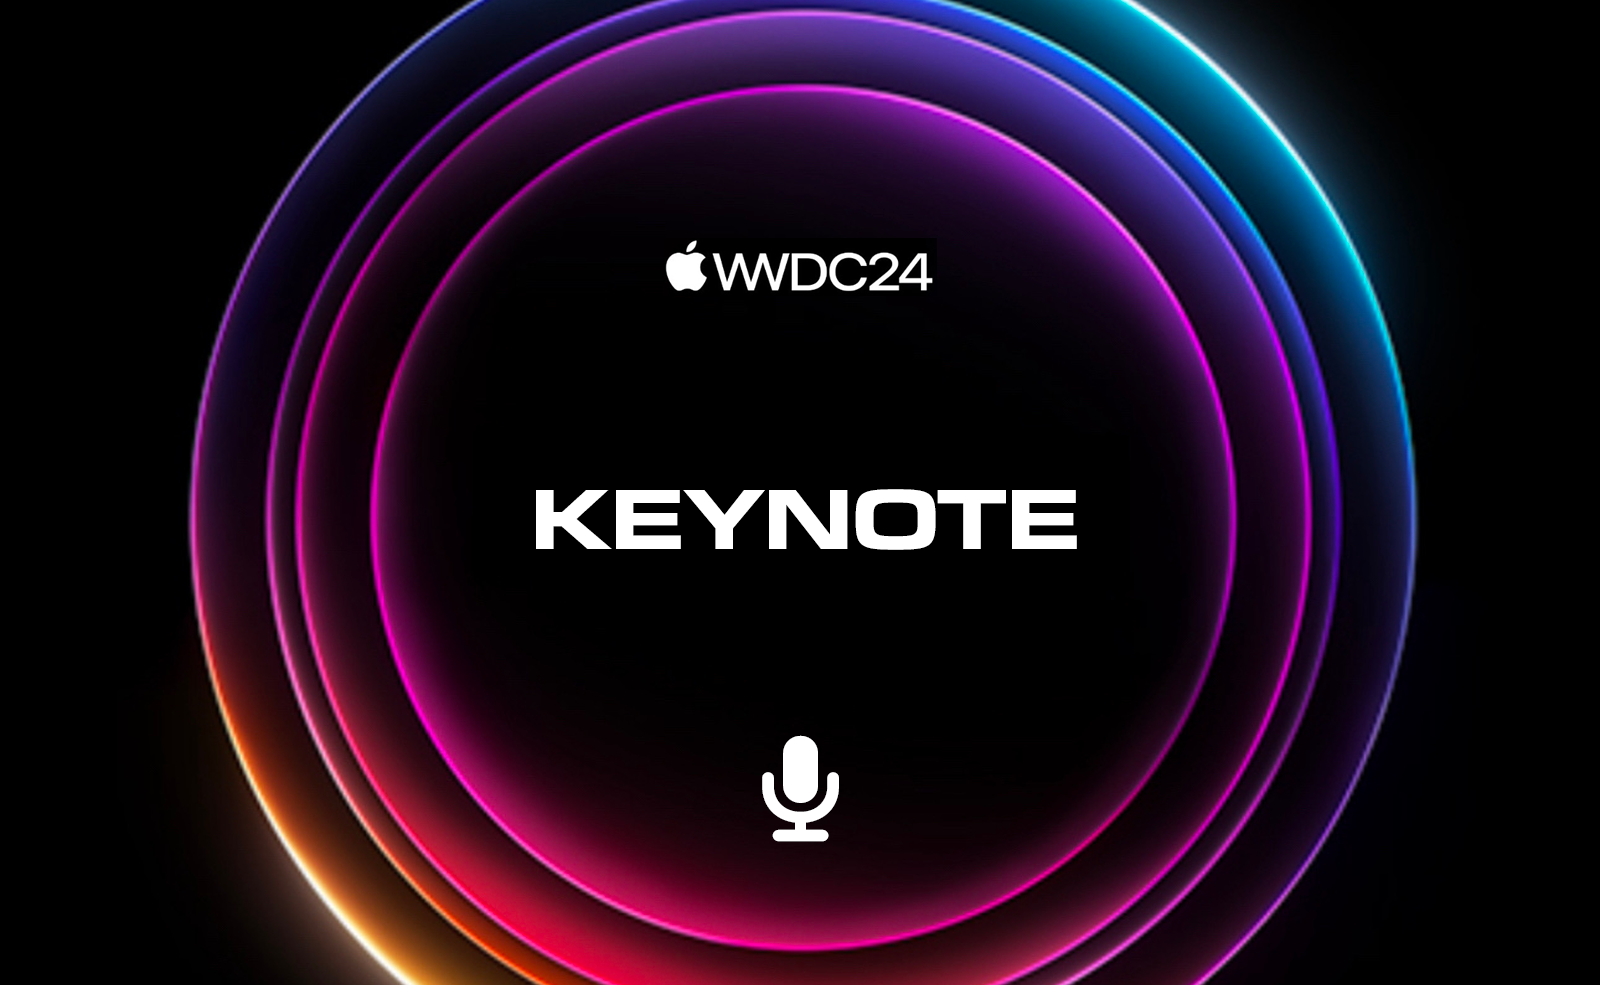 WWDC24 • Tour d’horizon des annonces pour les futures versions des systèmes Apple